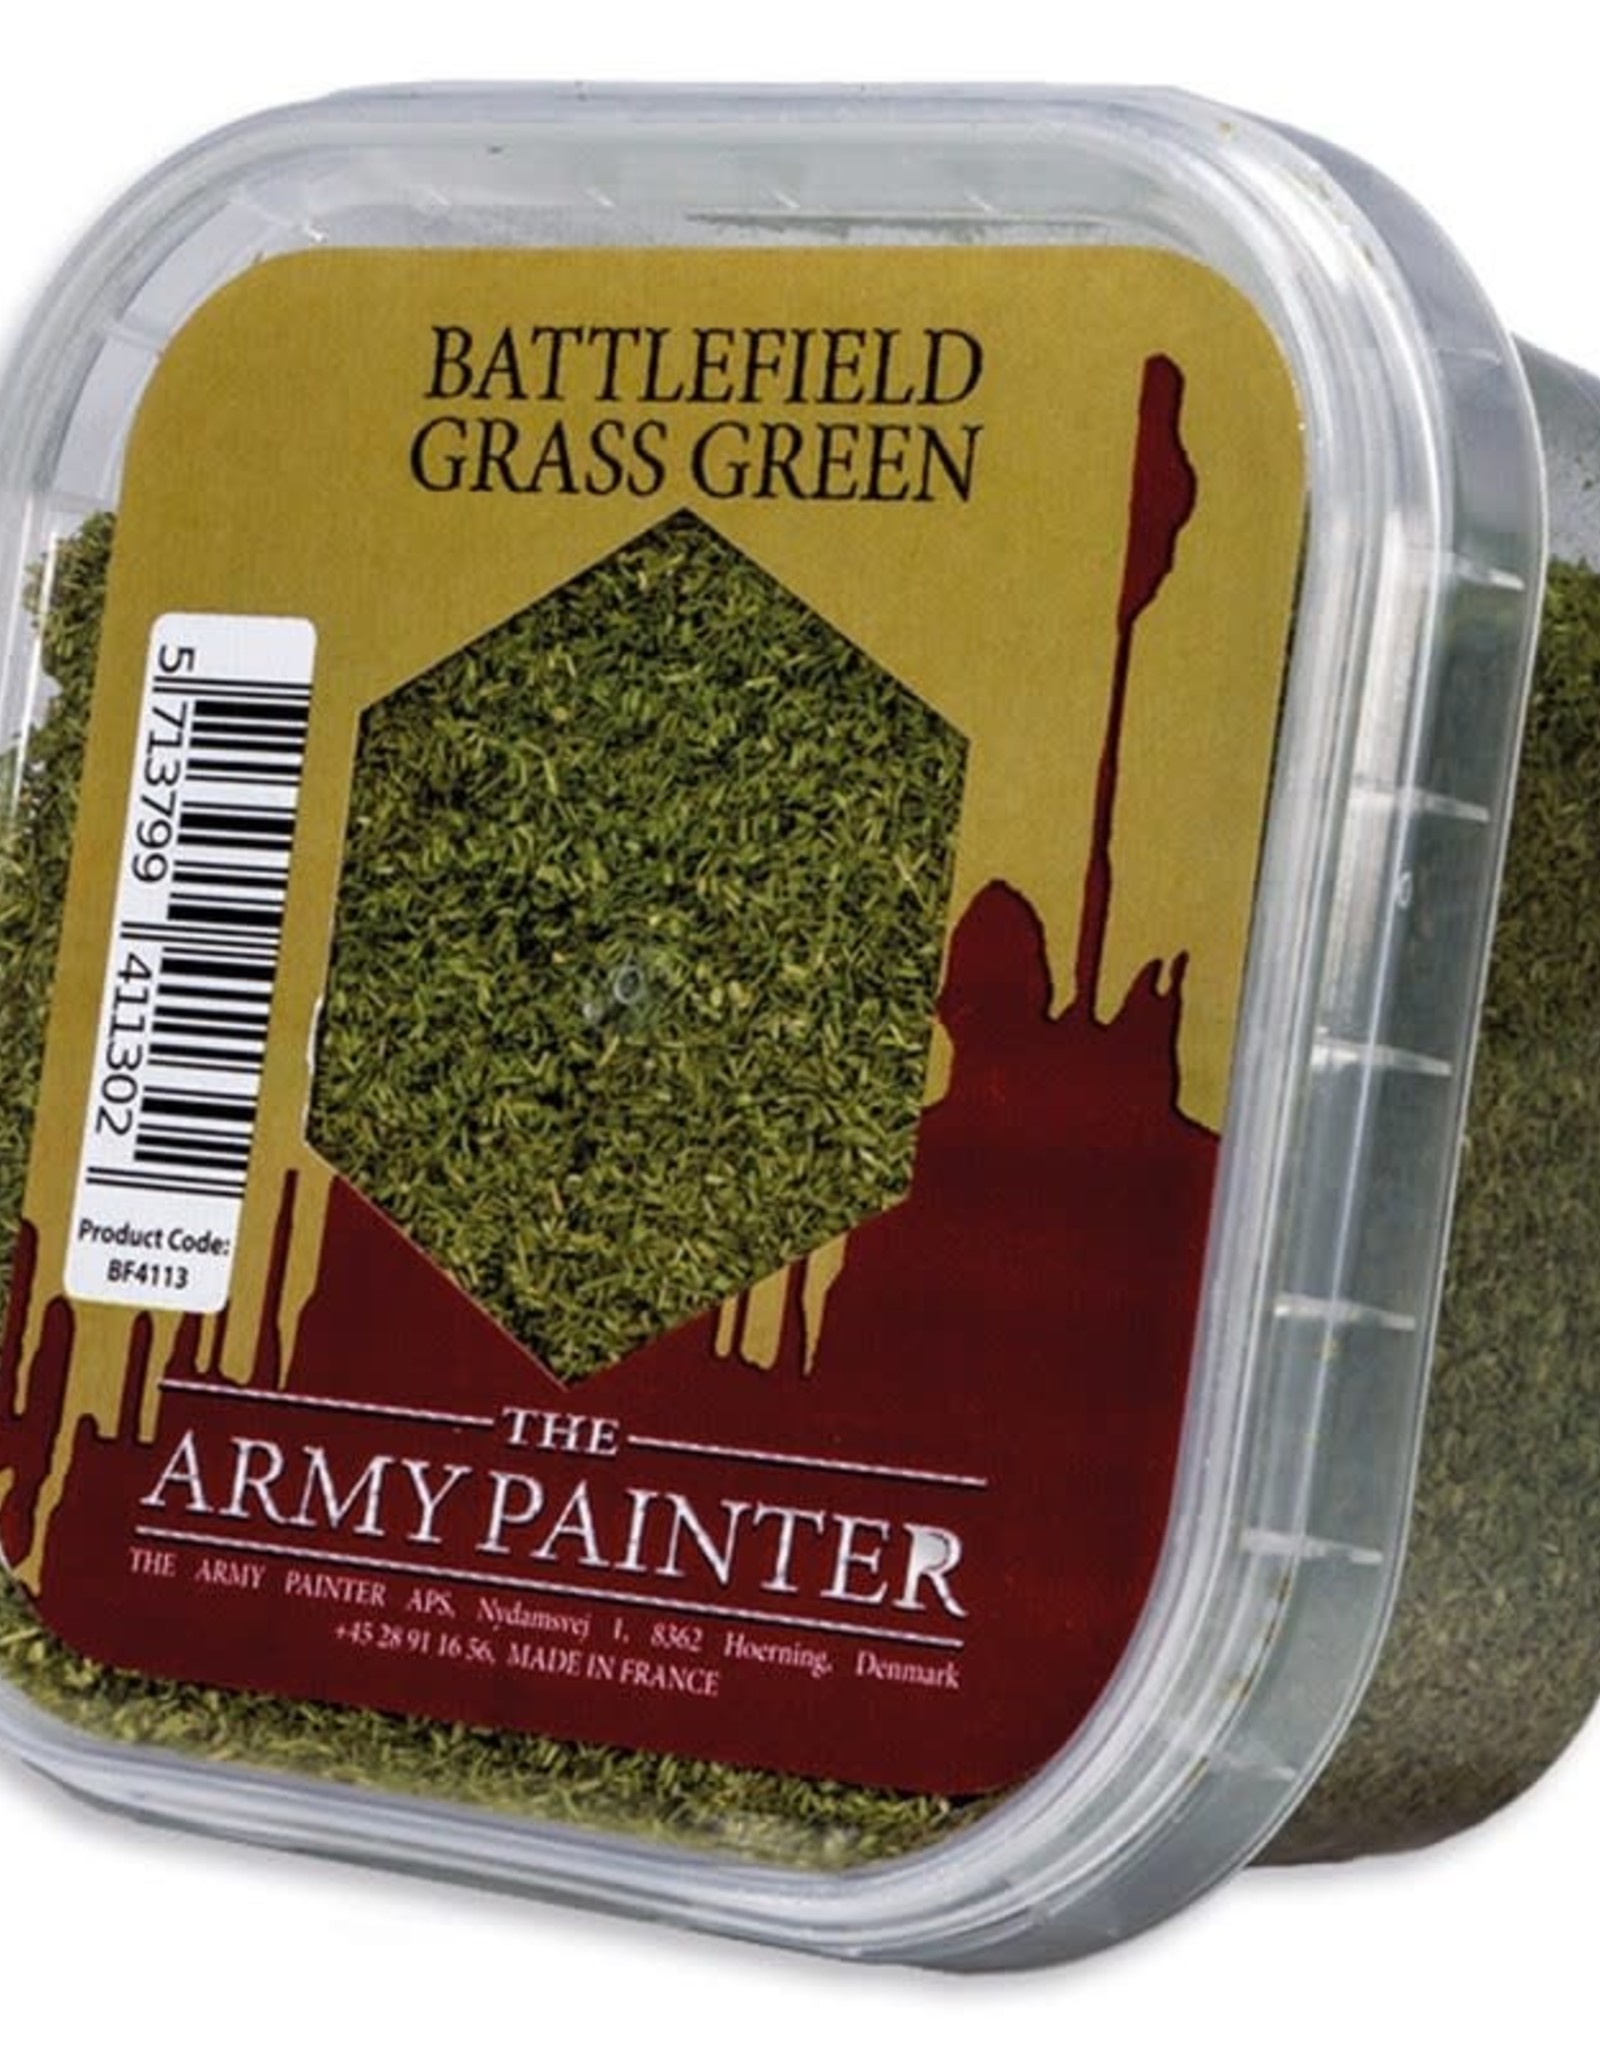 Battlefields: Battlefield Grass Green